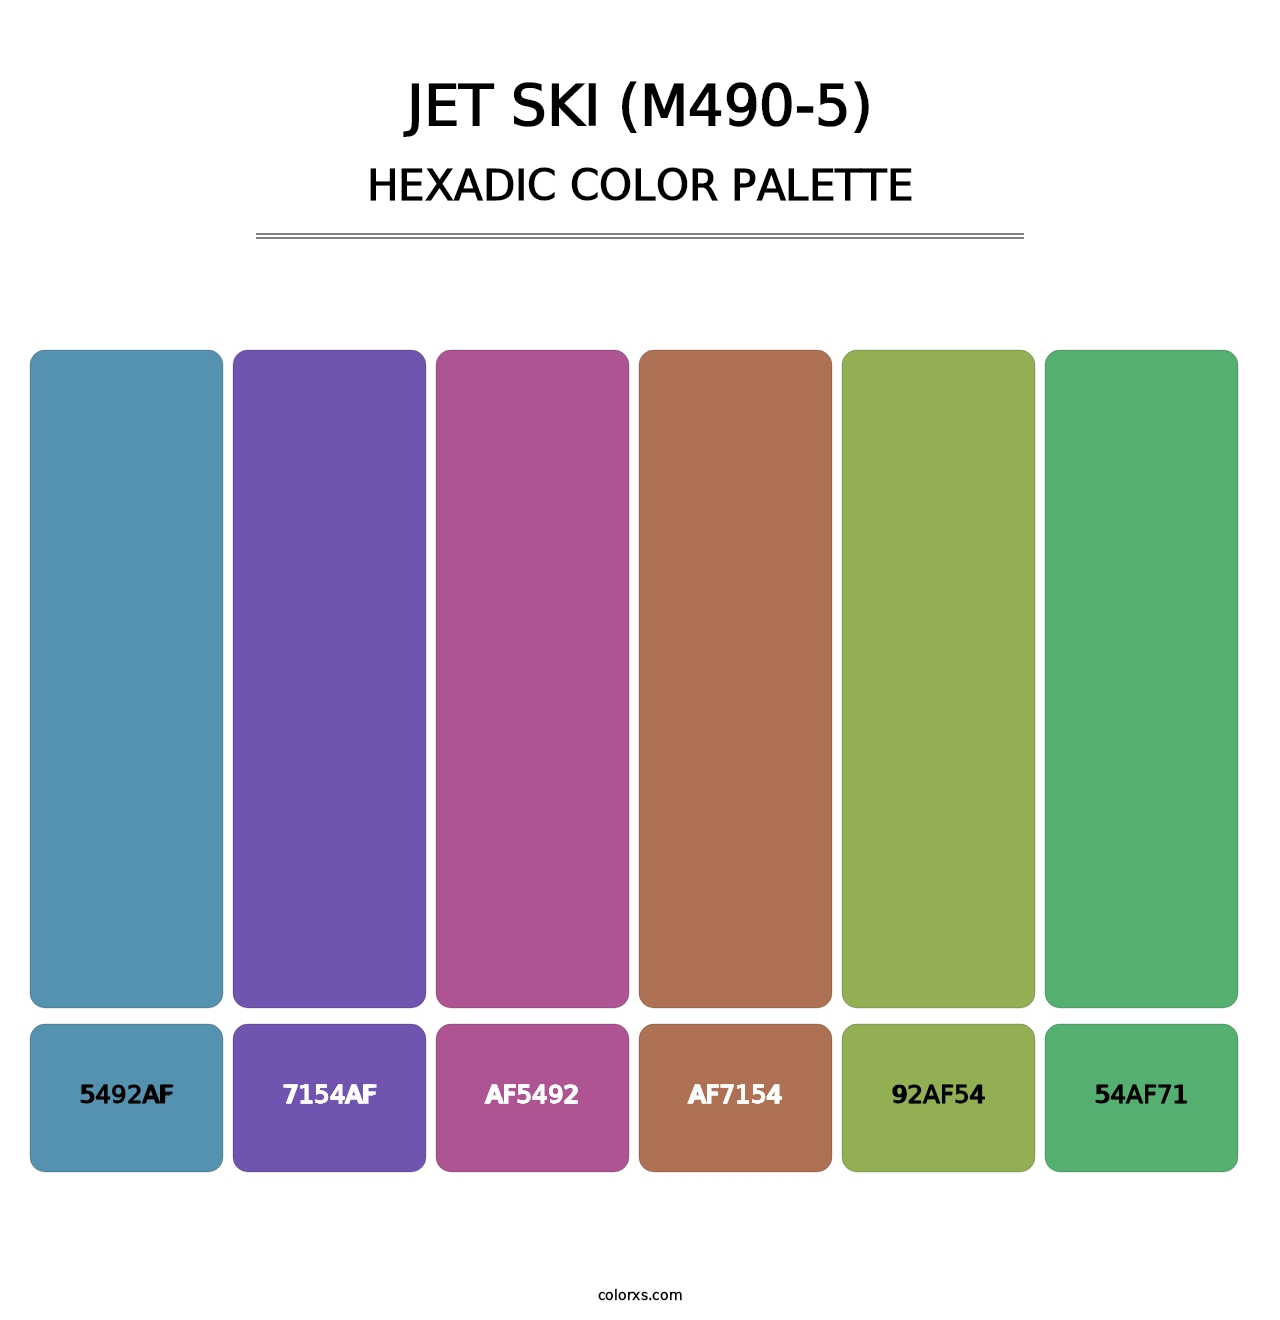 Jet Ski (M490-5) - Hexadic Color Palette